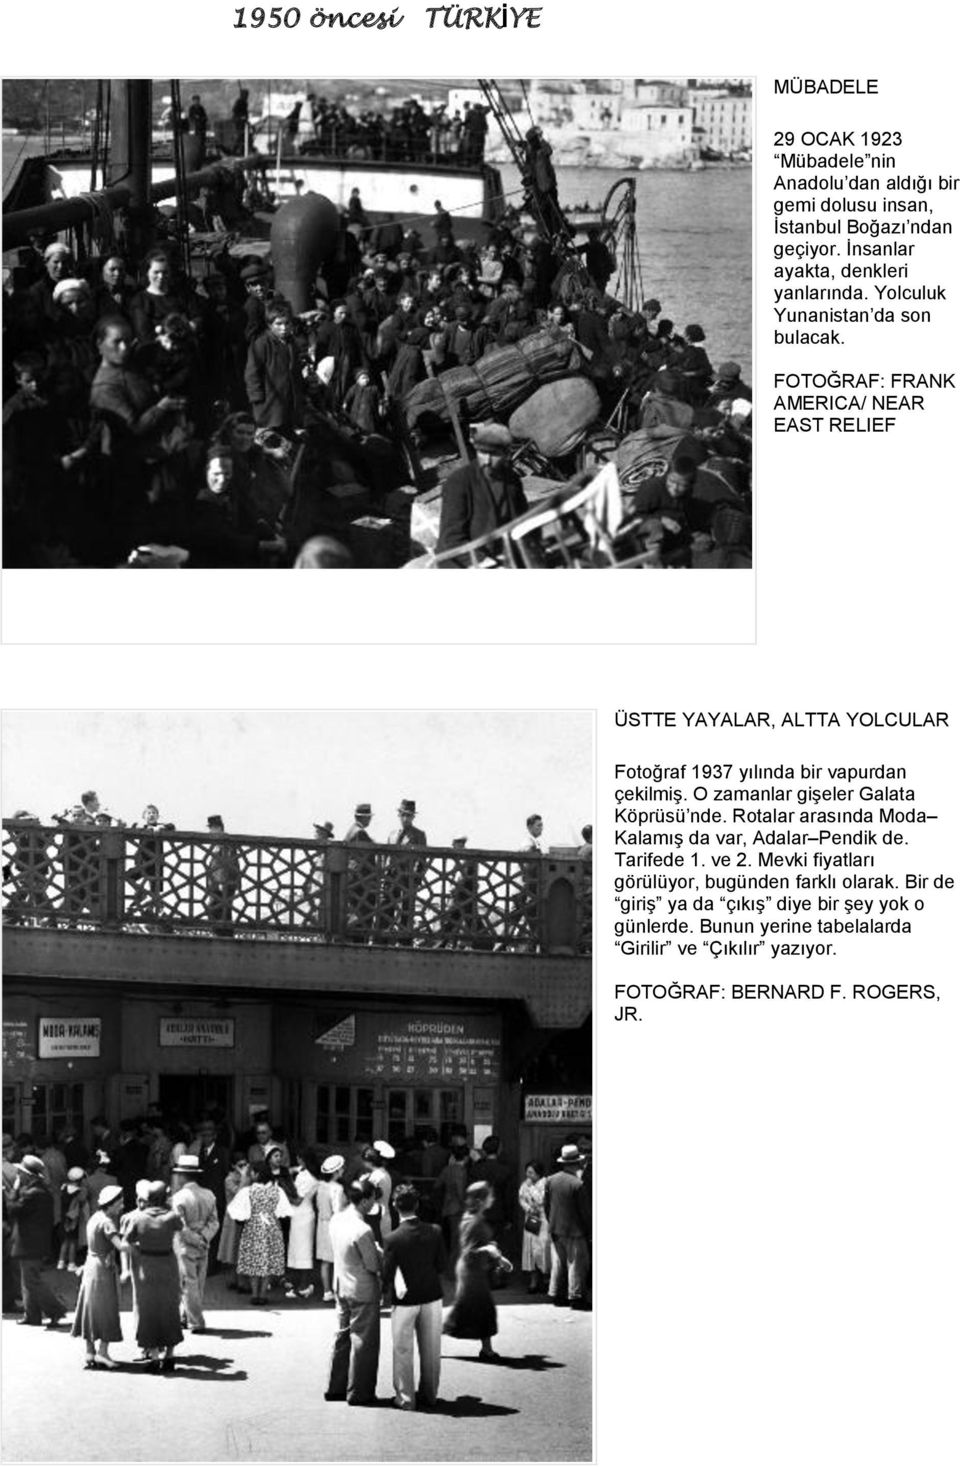 FRANK AMERICA/ NEAR EAST RELIEF ÜSTTE YAYALAR, ALTTA YOLCULAR Fotoğraf 1937 yılında bir vapurdan çekilmiş. O zamanlar gişeler Galata Köprüsü nde.